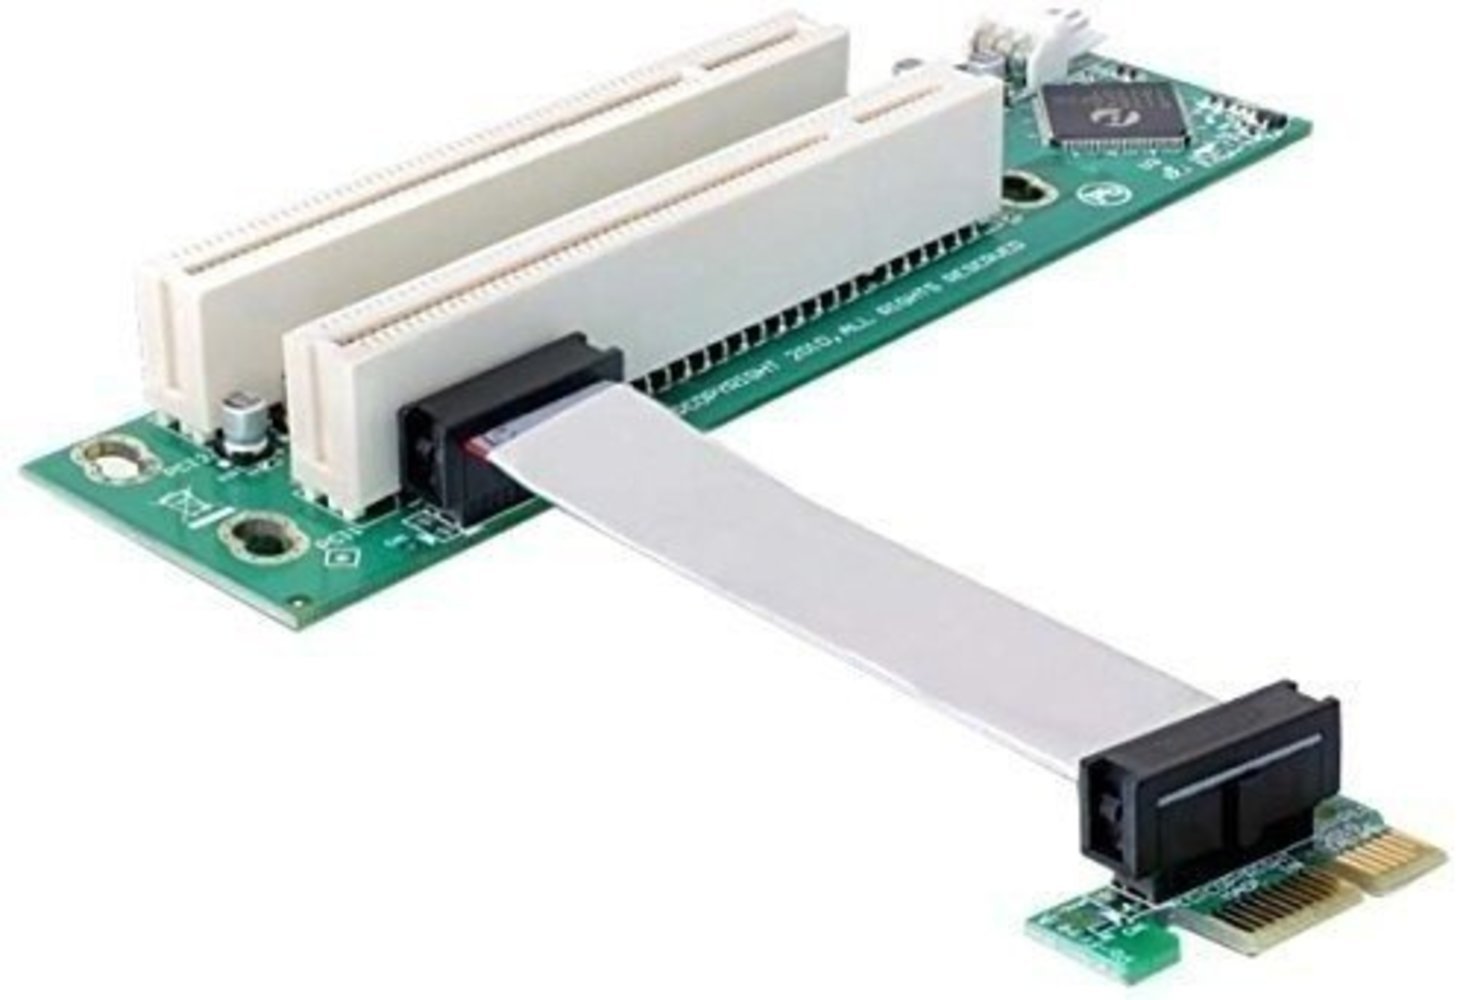 Delock PCIe Riser Karte mit 2 x PCI 32bit/5V Links und 9cm Kabel - Hochwertige PCIe Riser Karte für erweiterte Anschlussmöglichkeiten